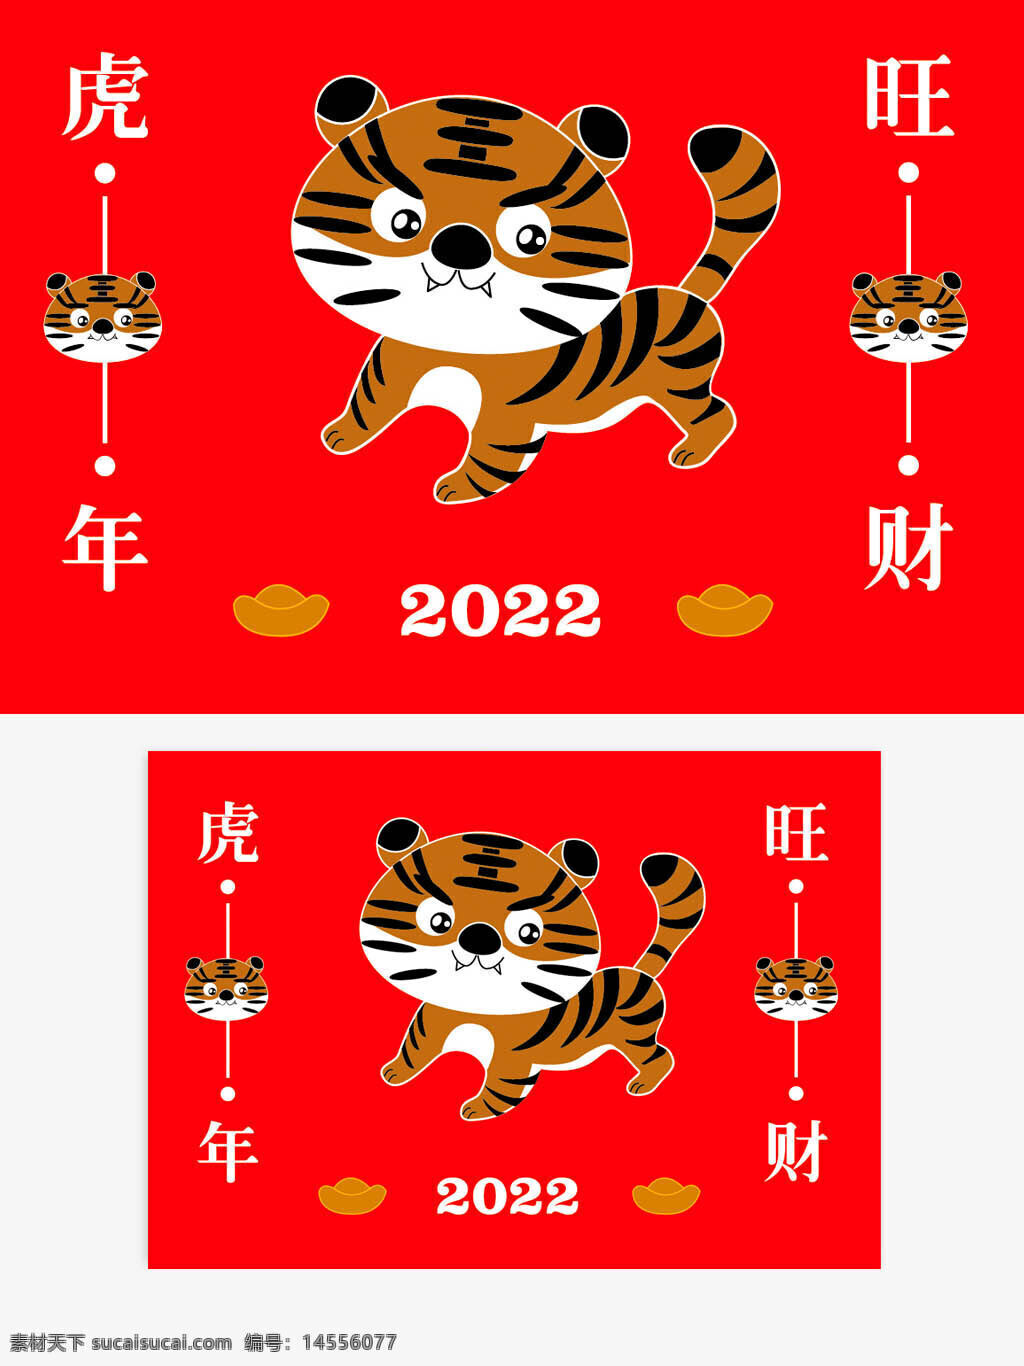 虎年 元宝 旺财 虎年大吉 万事顺遂 日历 月历 封面 年历 老虎 虎 吉祥物 2022年 2022